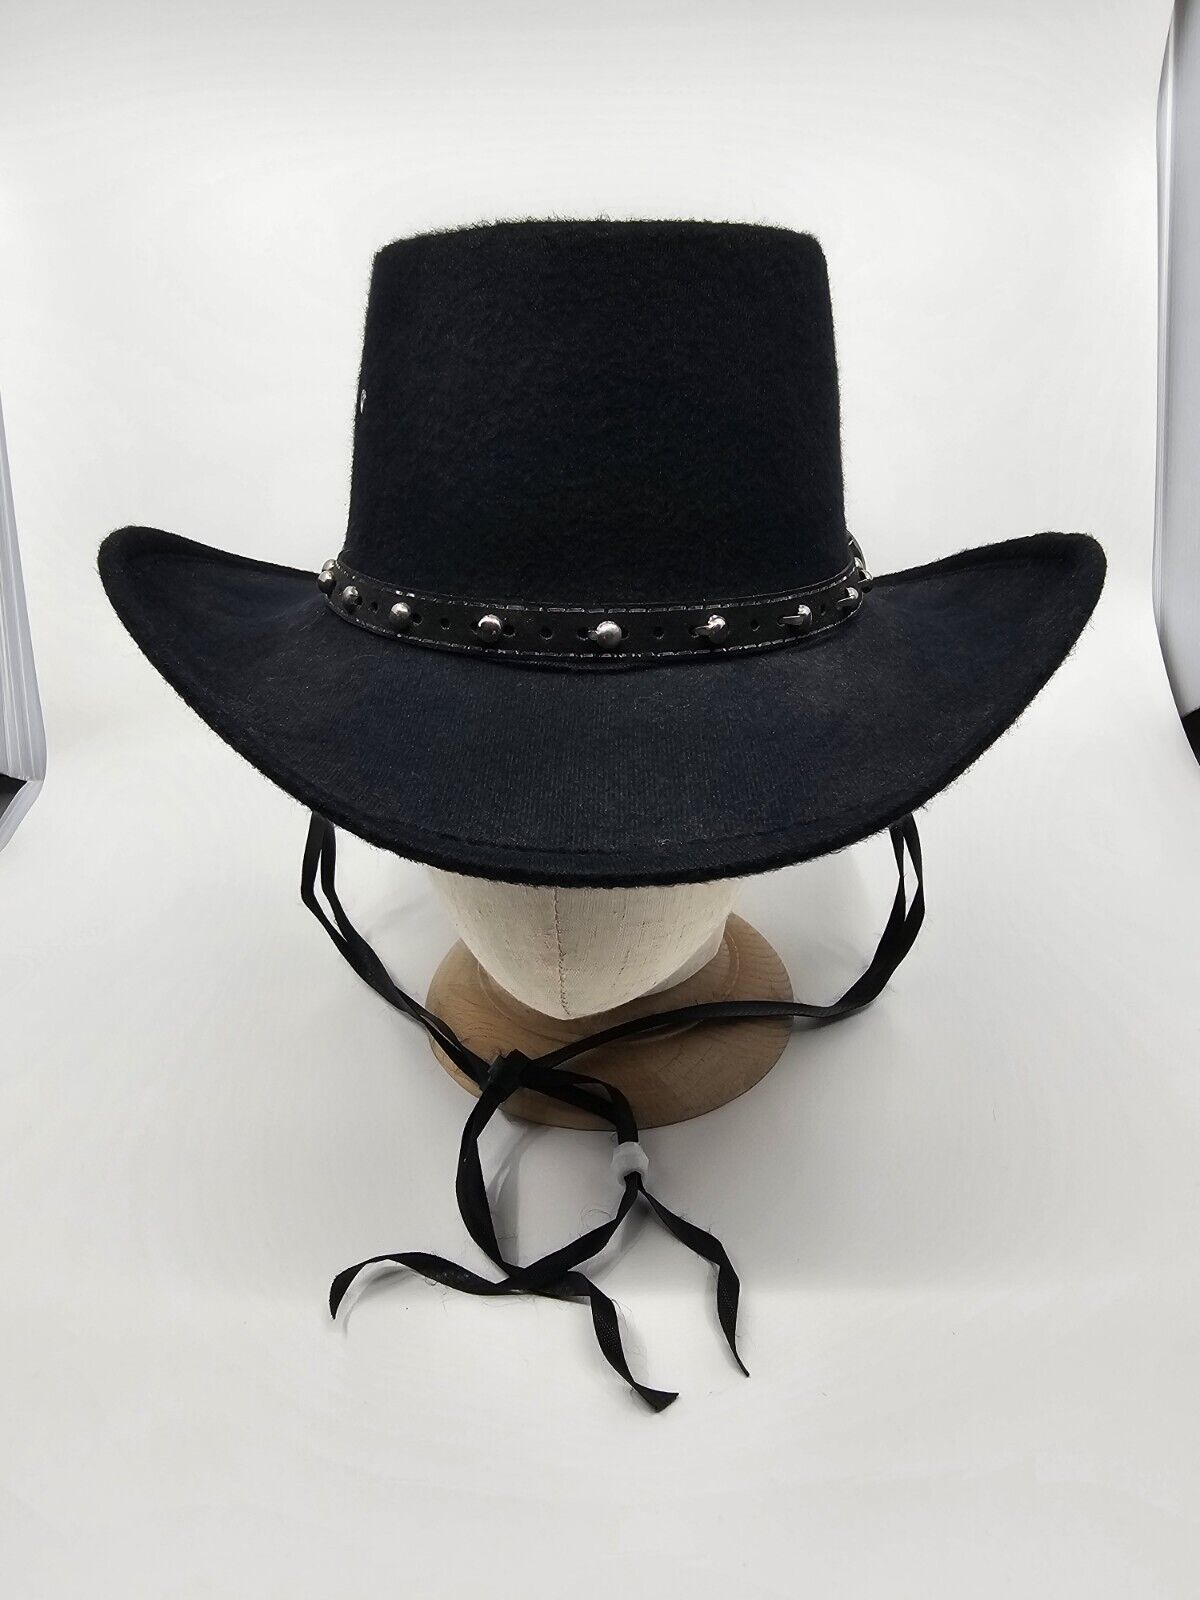 Western Express Faux Felt Wide Brim Western Cowboy Hat Black Size 6-7/8 - $54.99